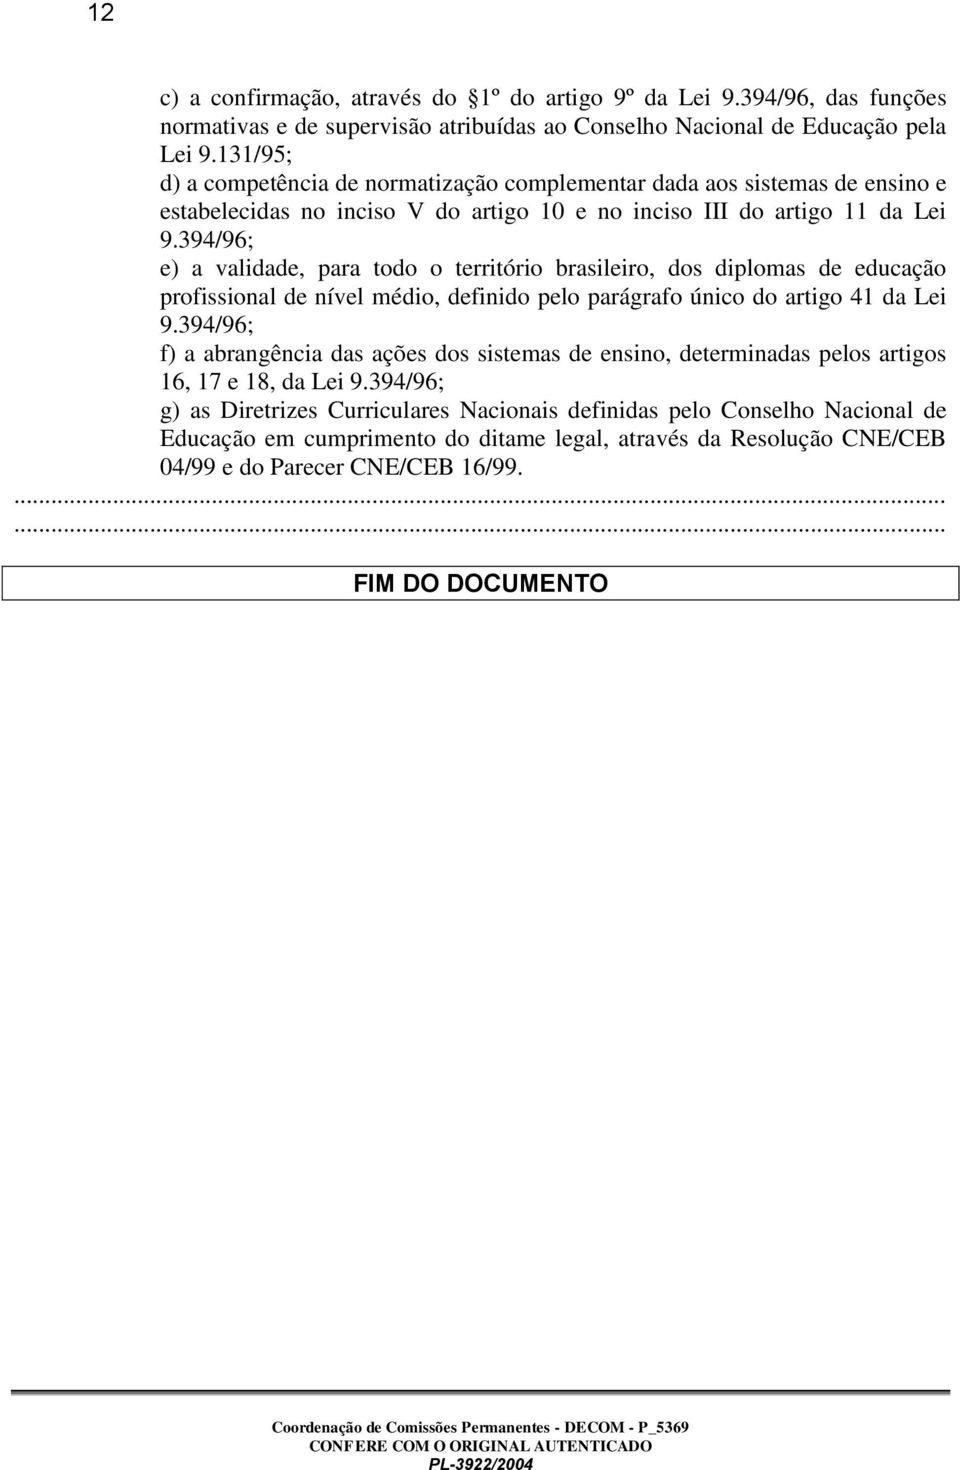 394/96; e) a validade, para todo o território brasileiro, dos diplomas de educação profissional de nível médio, definido pelo parágrafo único do artigo 41 da Lei 9.